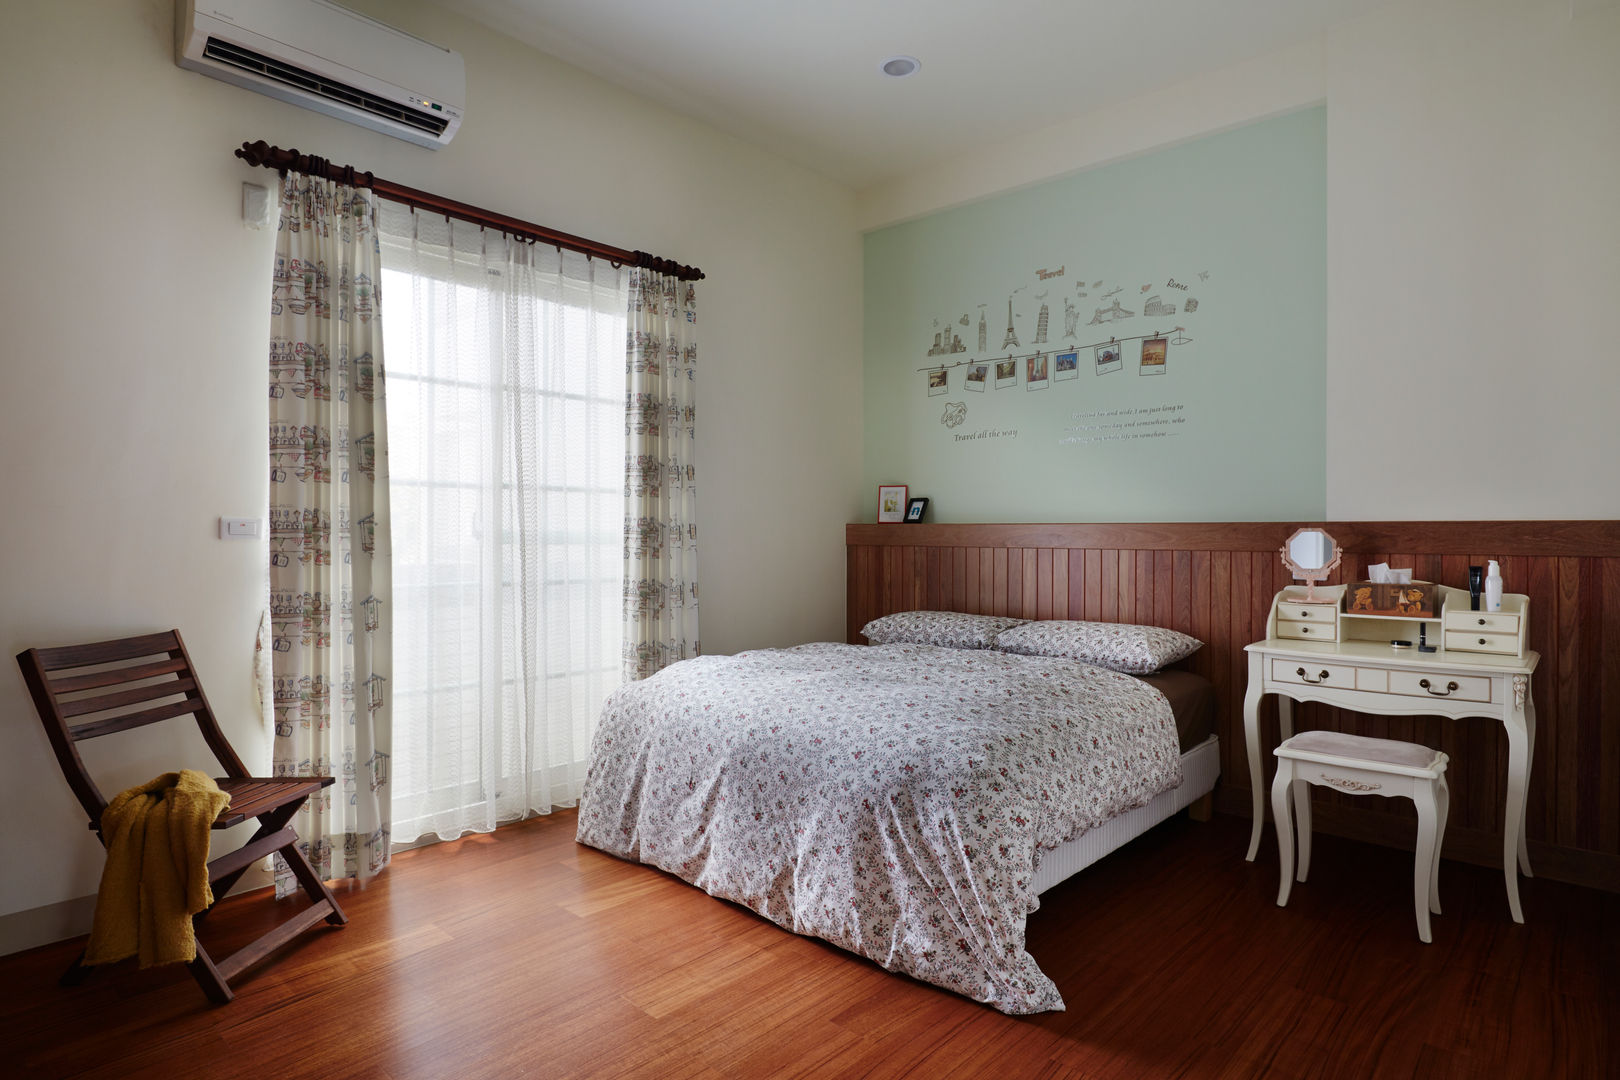 簡單的床板與床頭的顏色營造輕鬆的休憩氛圍，溫暖、簡單而又輕鬆寫意 homify Country style bedroom Concrete